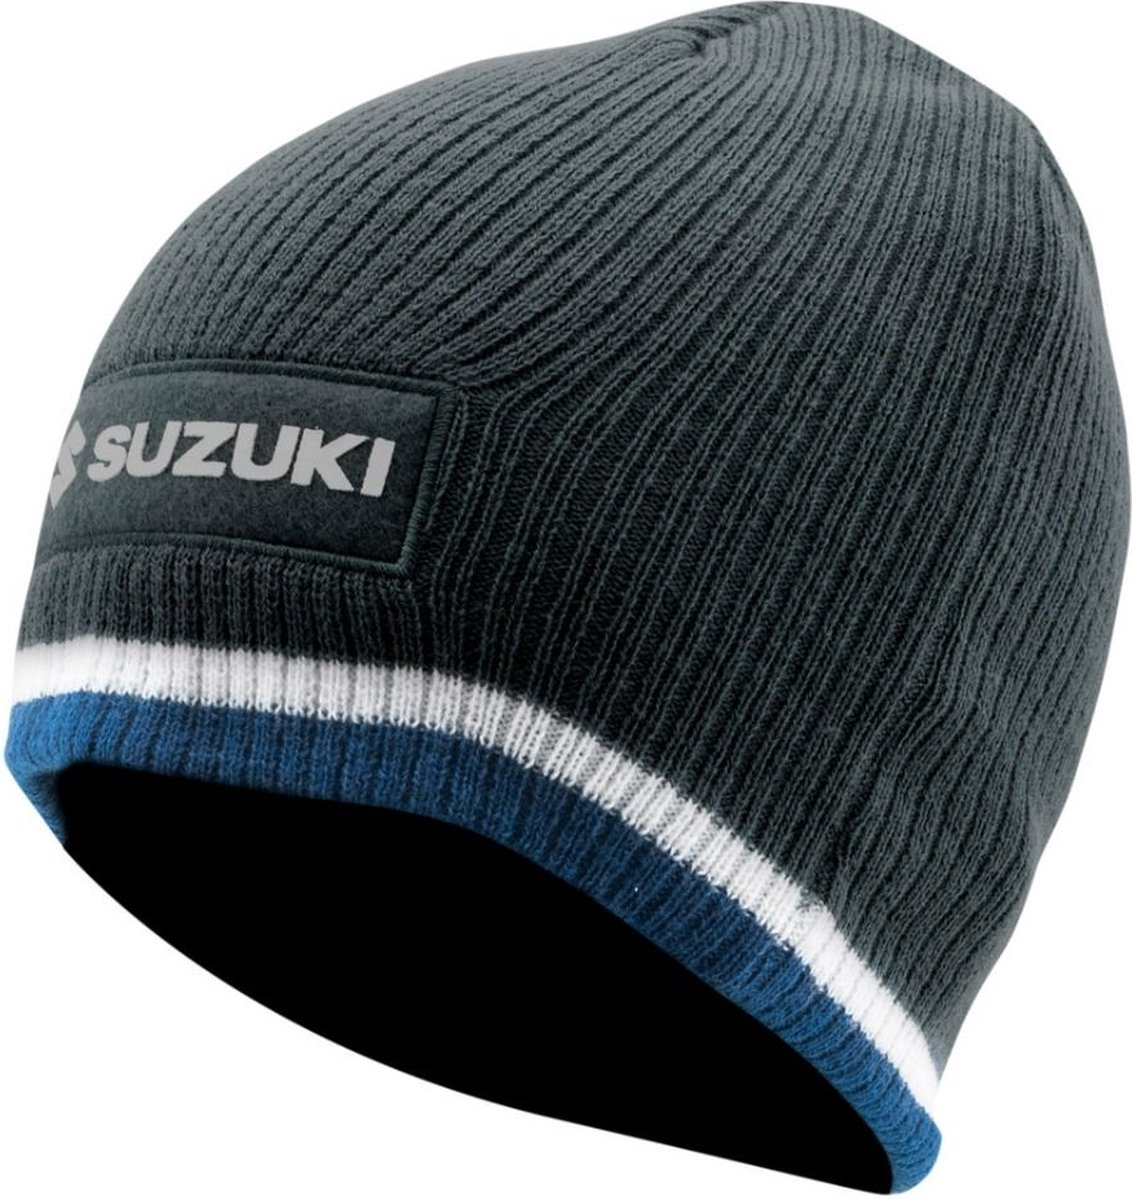 Suzuki Team Blue muts (beanie)